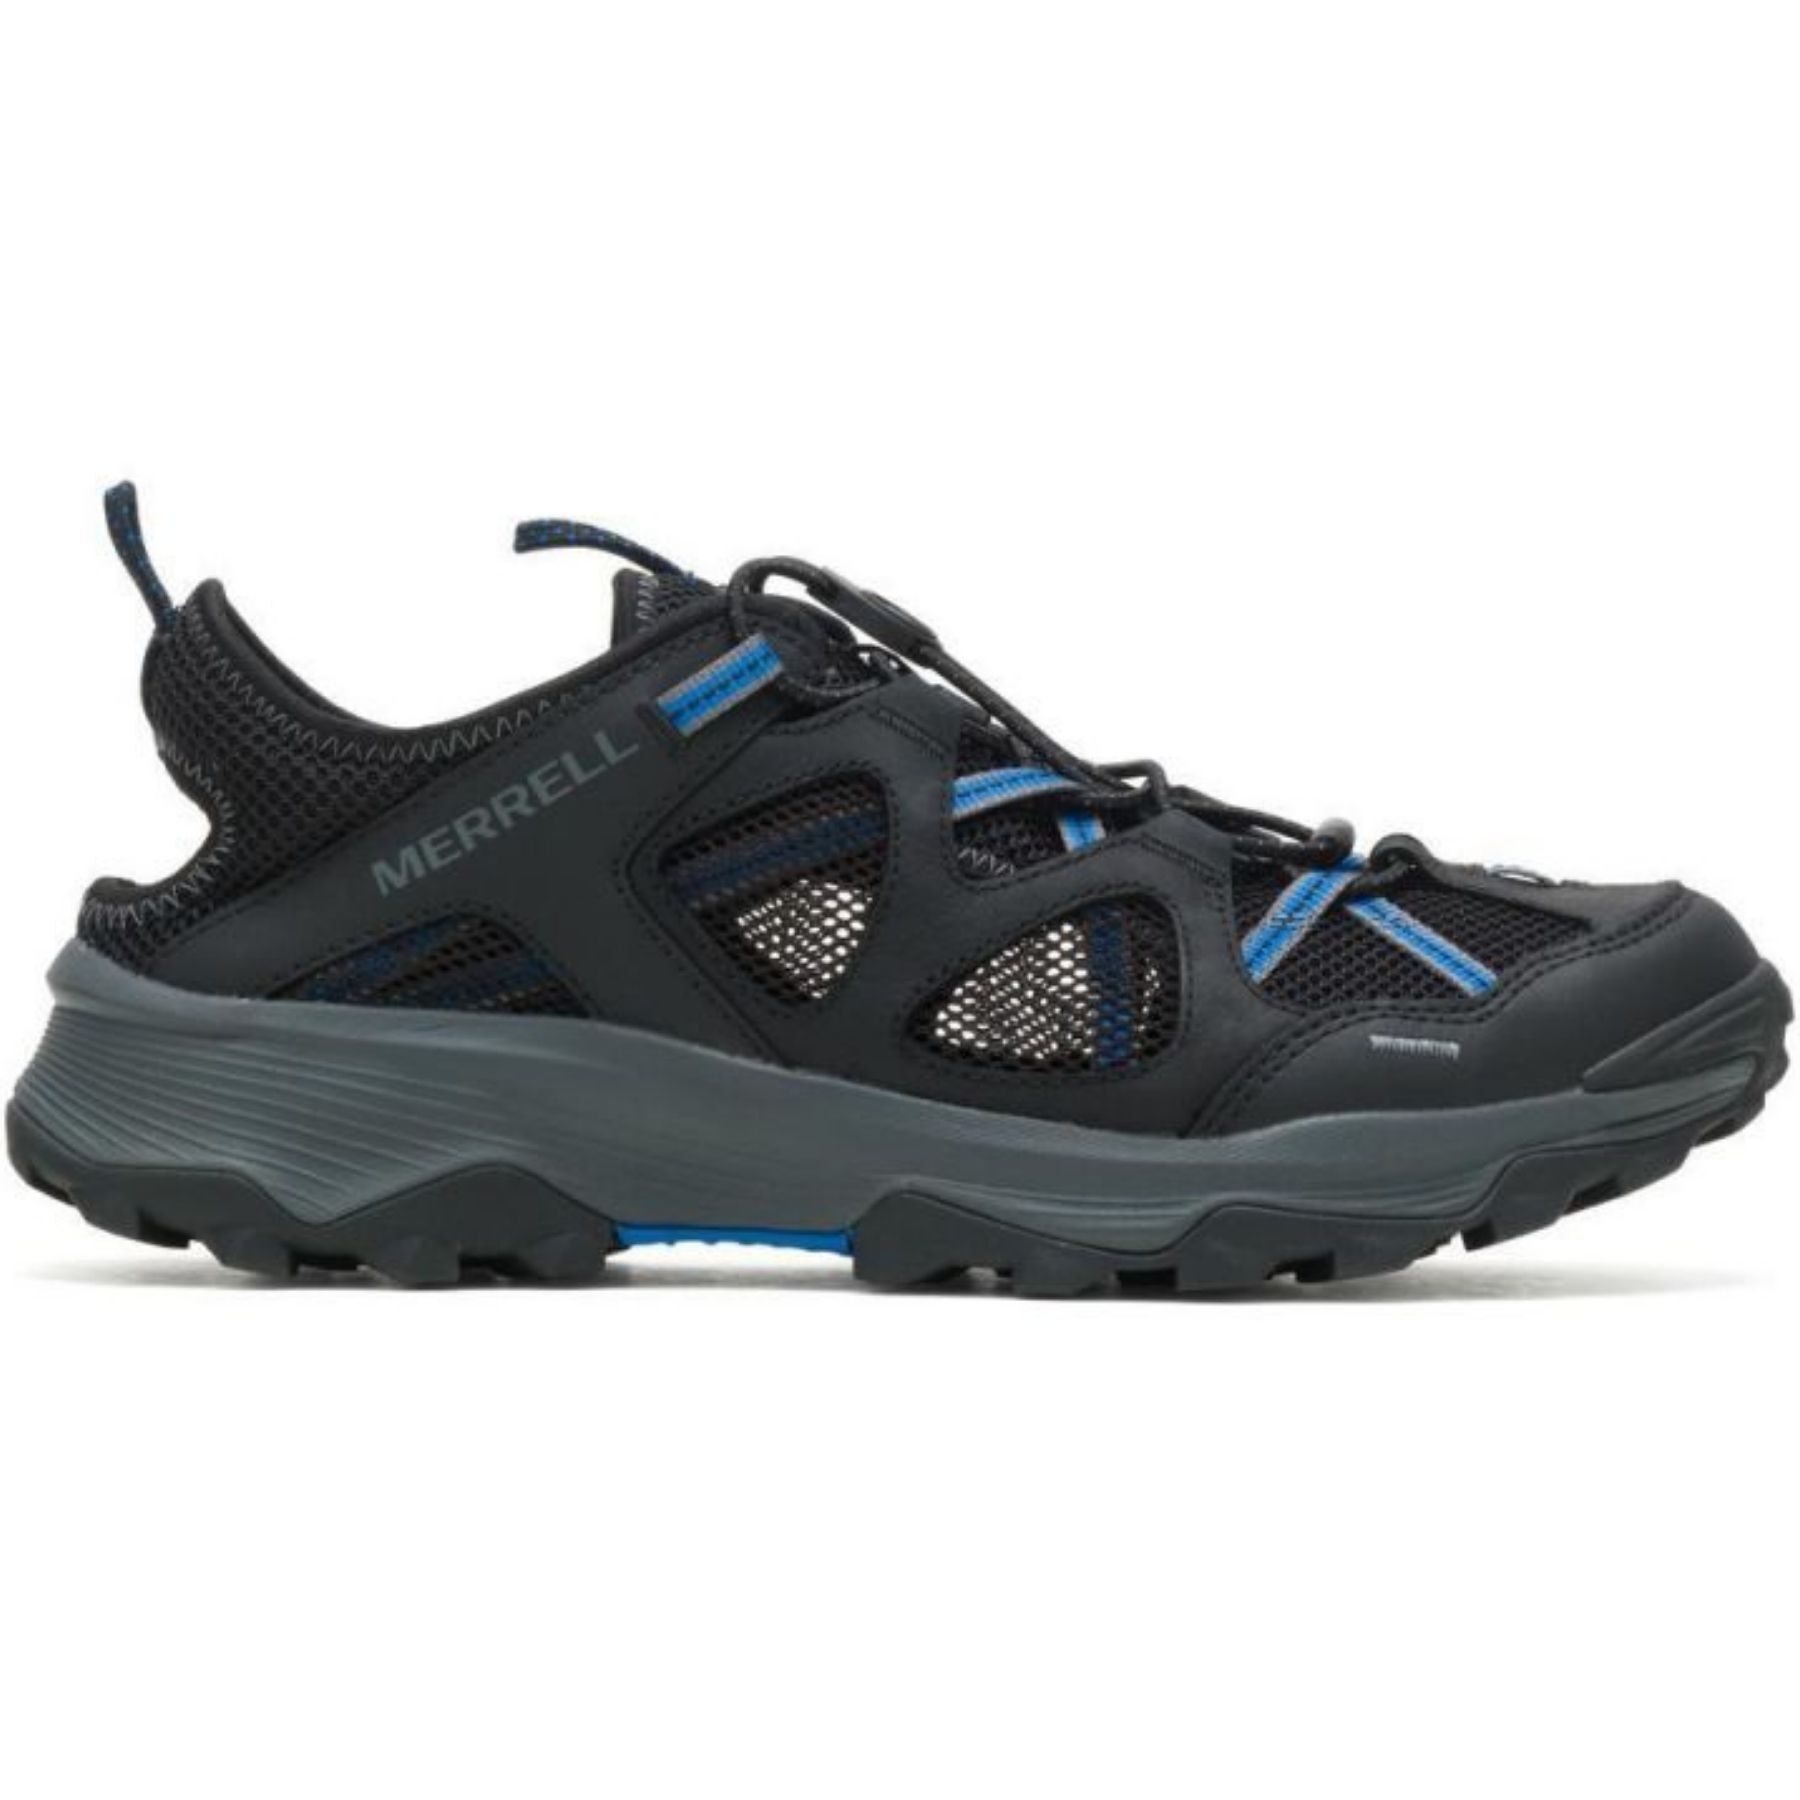 Merrell Speed Strike Ltr Sieve - Hiking shoes - Men's